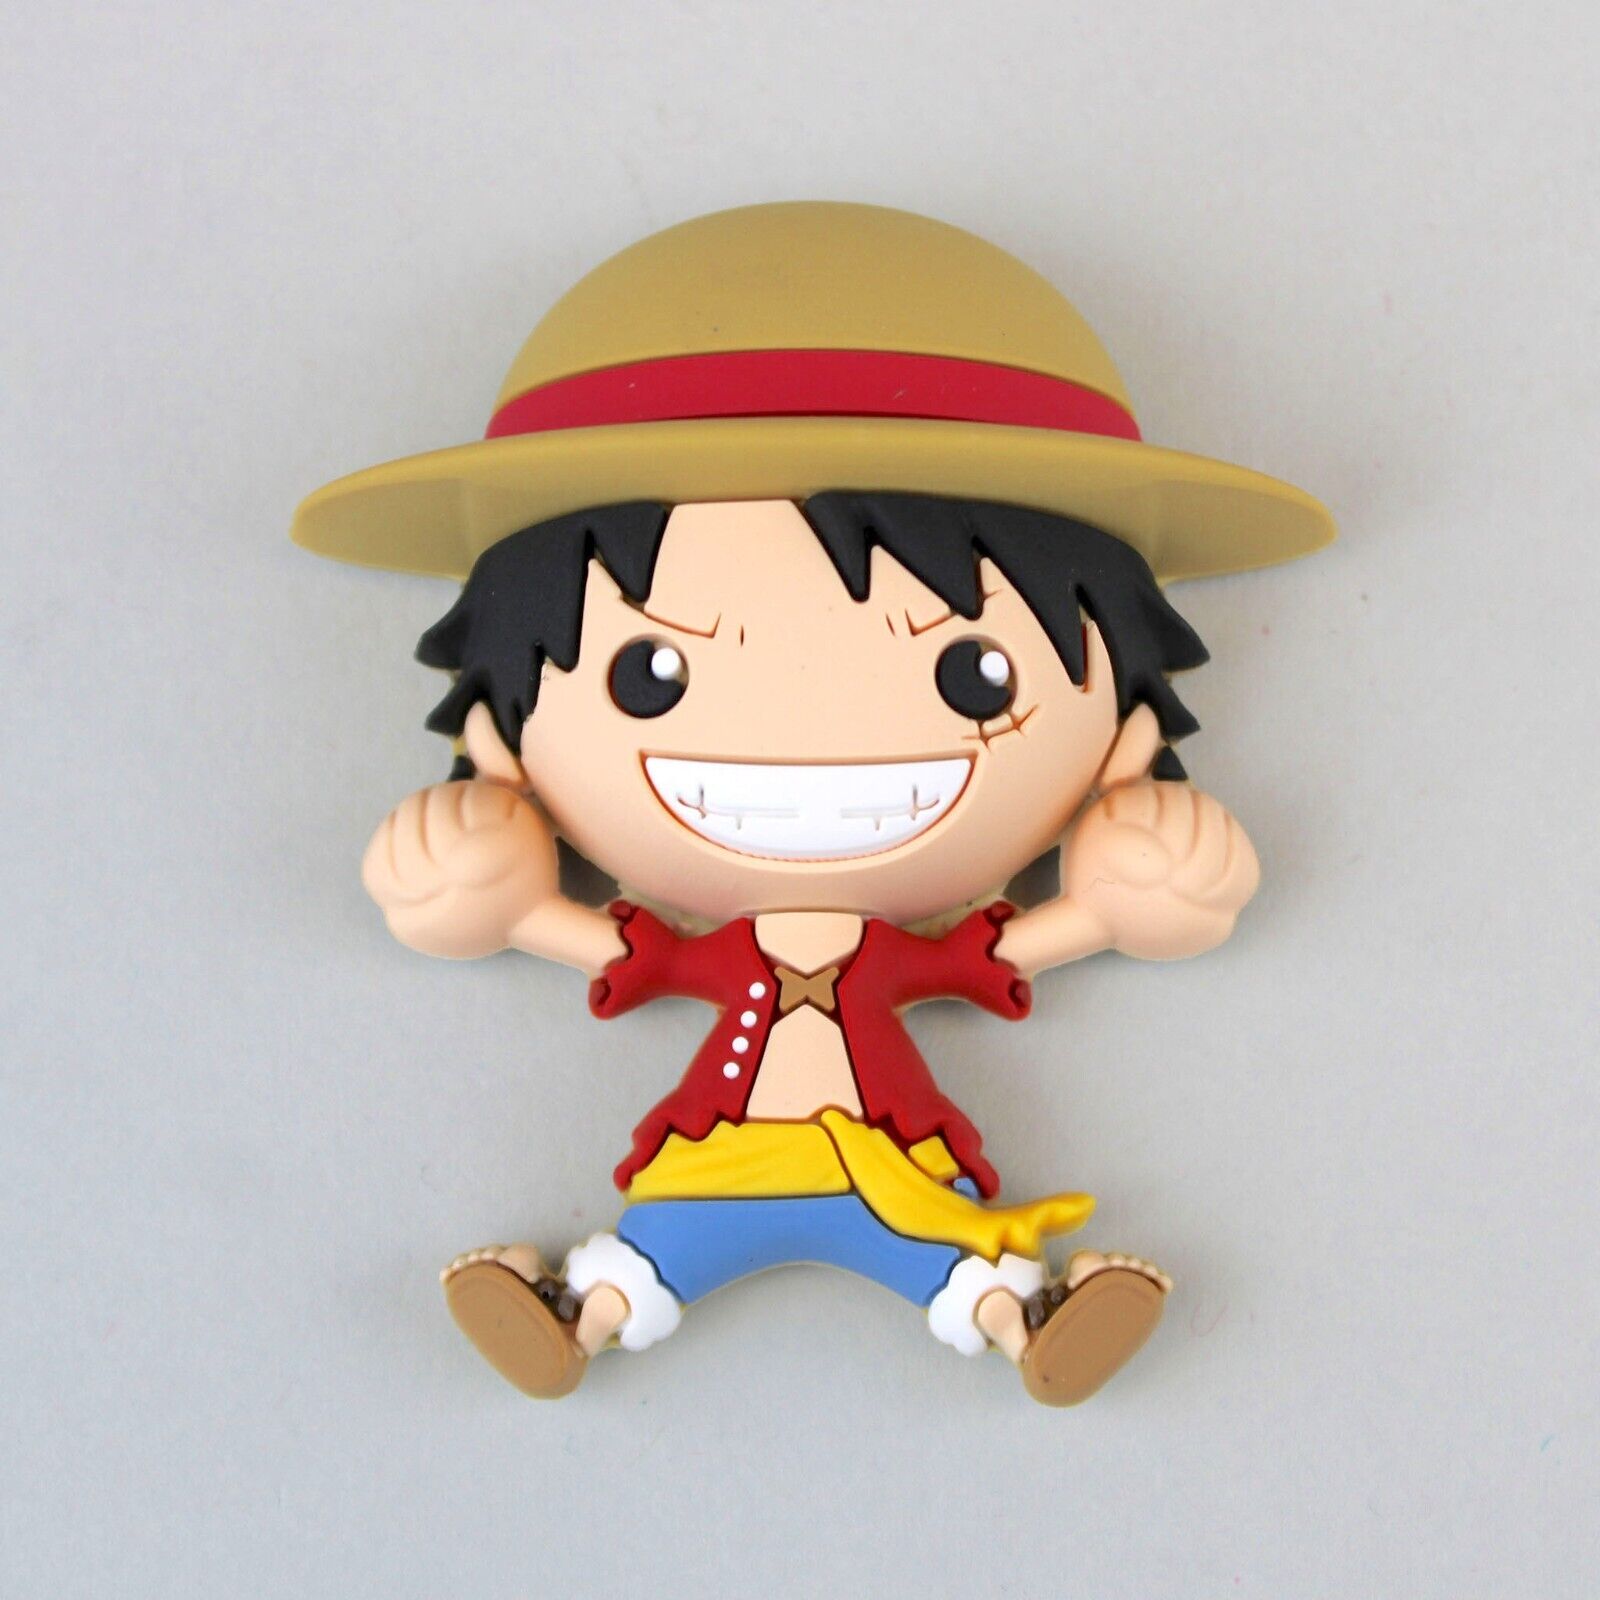 Monogram Iman 3D: One Piece - Luffy